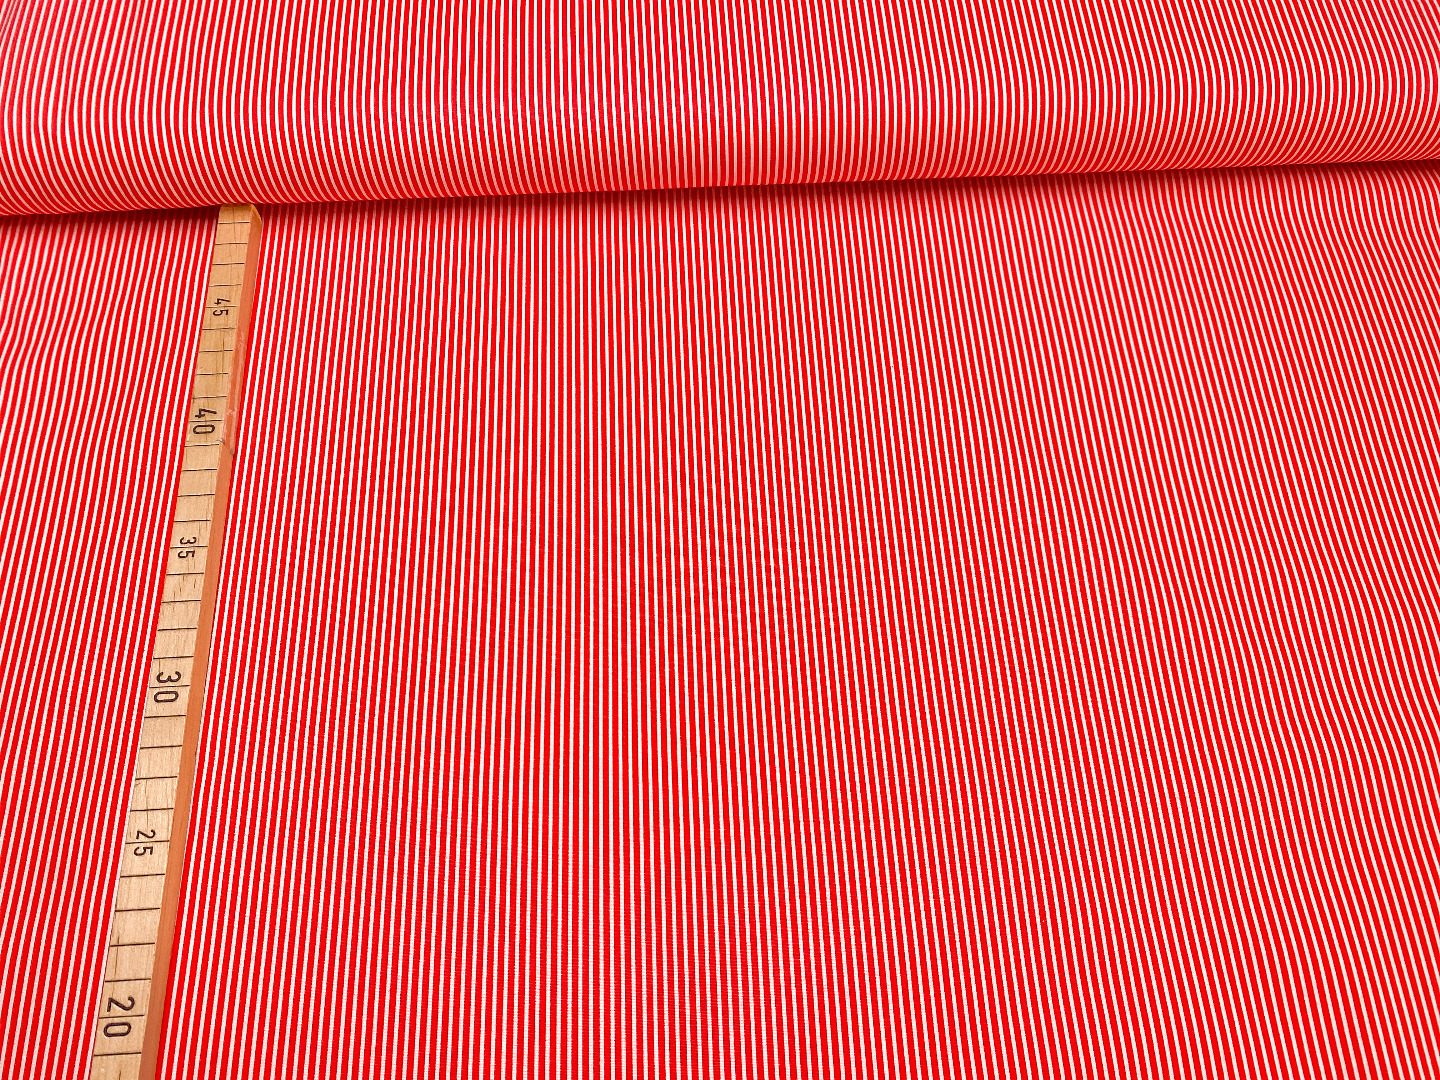 Stoff Streifen - rot/weiß - 100 Baumwolle - Patchwork 2